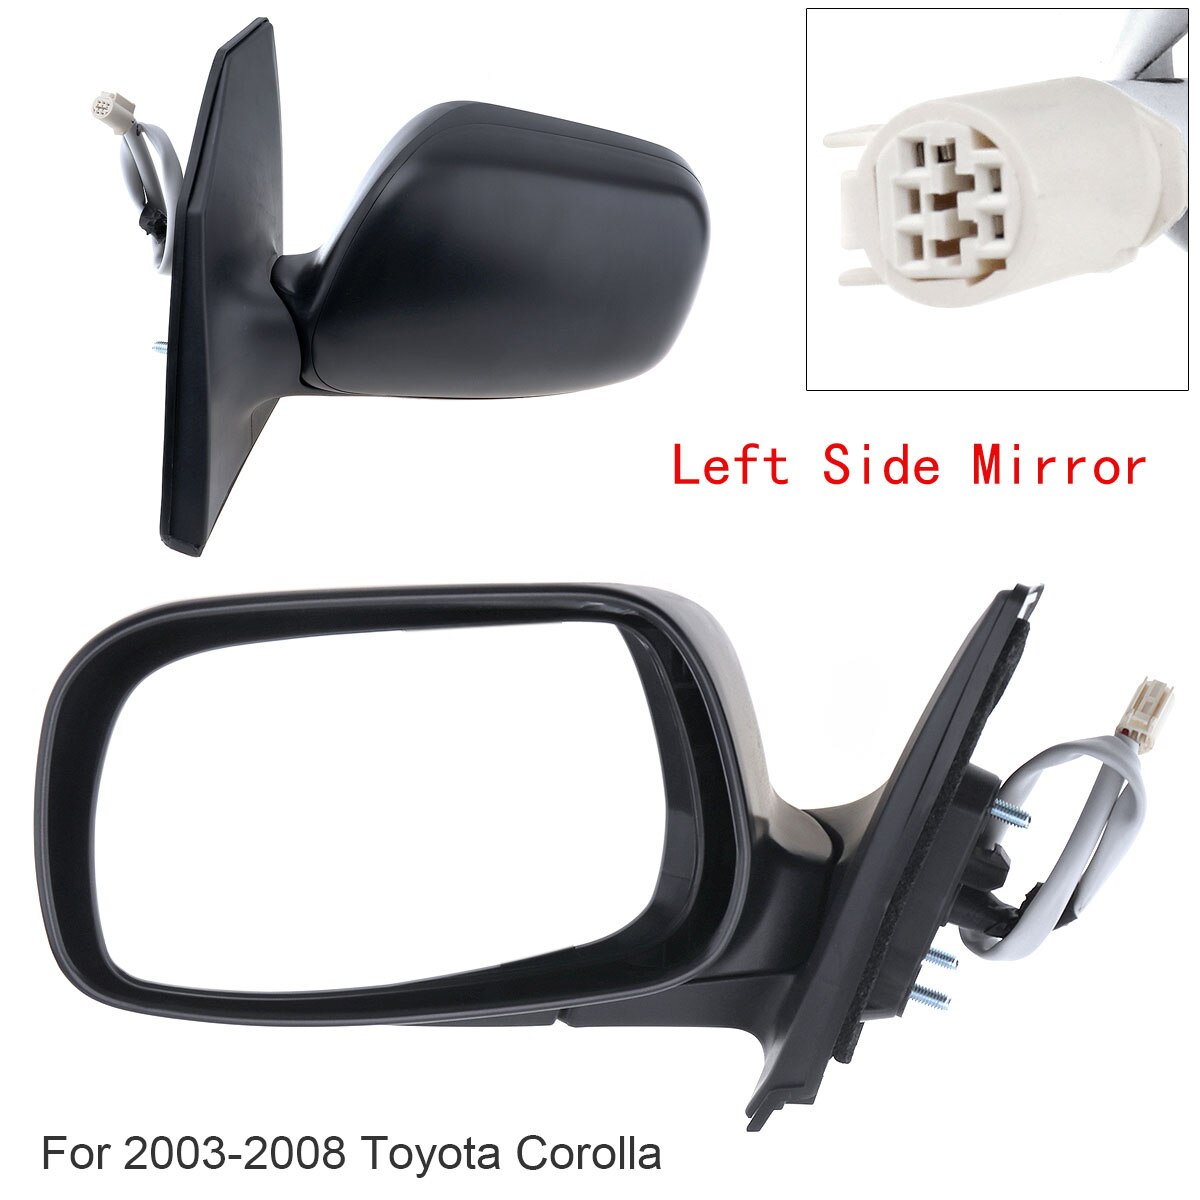 Niet-Opvouwbare Links/Rechts Spiegel Links/Rechts Rh Spiegel Voor 2003 Toyota Corolla ce/Le/S/ Sport/Xrs Sedan 4-Deur